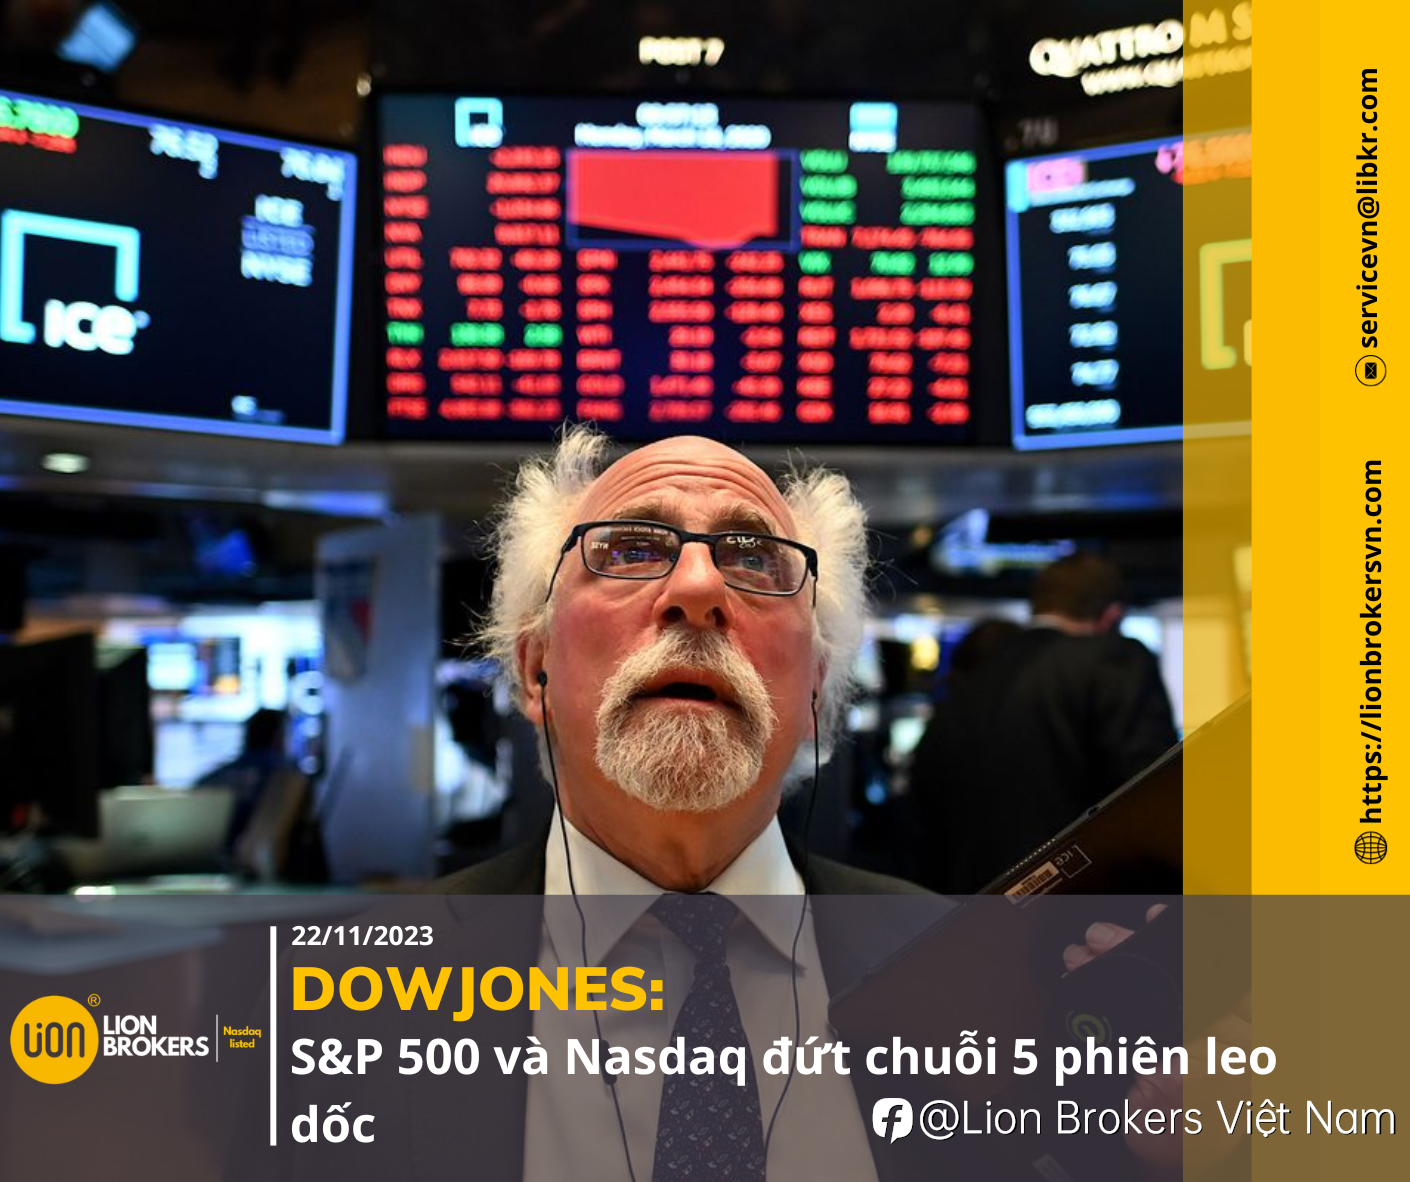 DOWJONES: S&P 500 VÀ NASDAQ ĐỨT CHUỖI 5 PHIÊN LEO DỐC